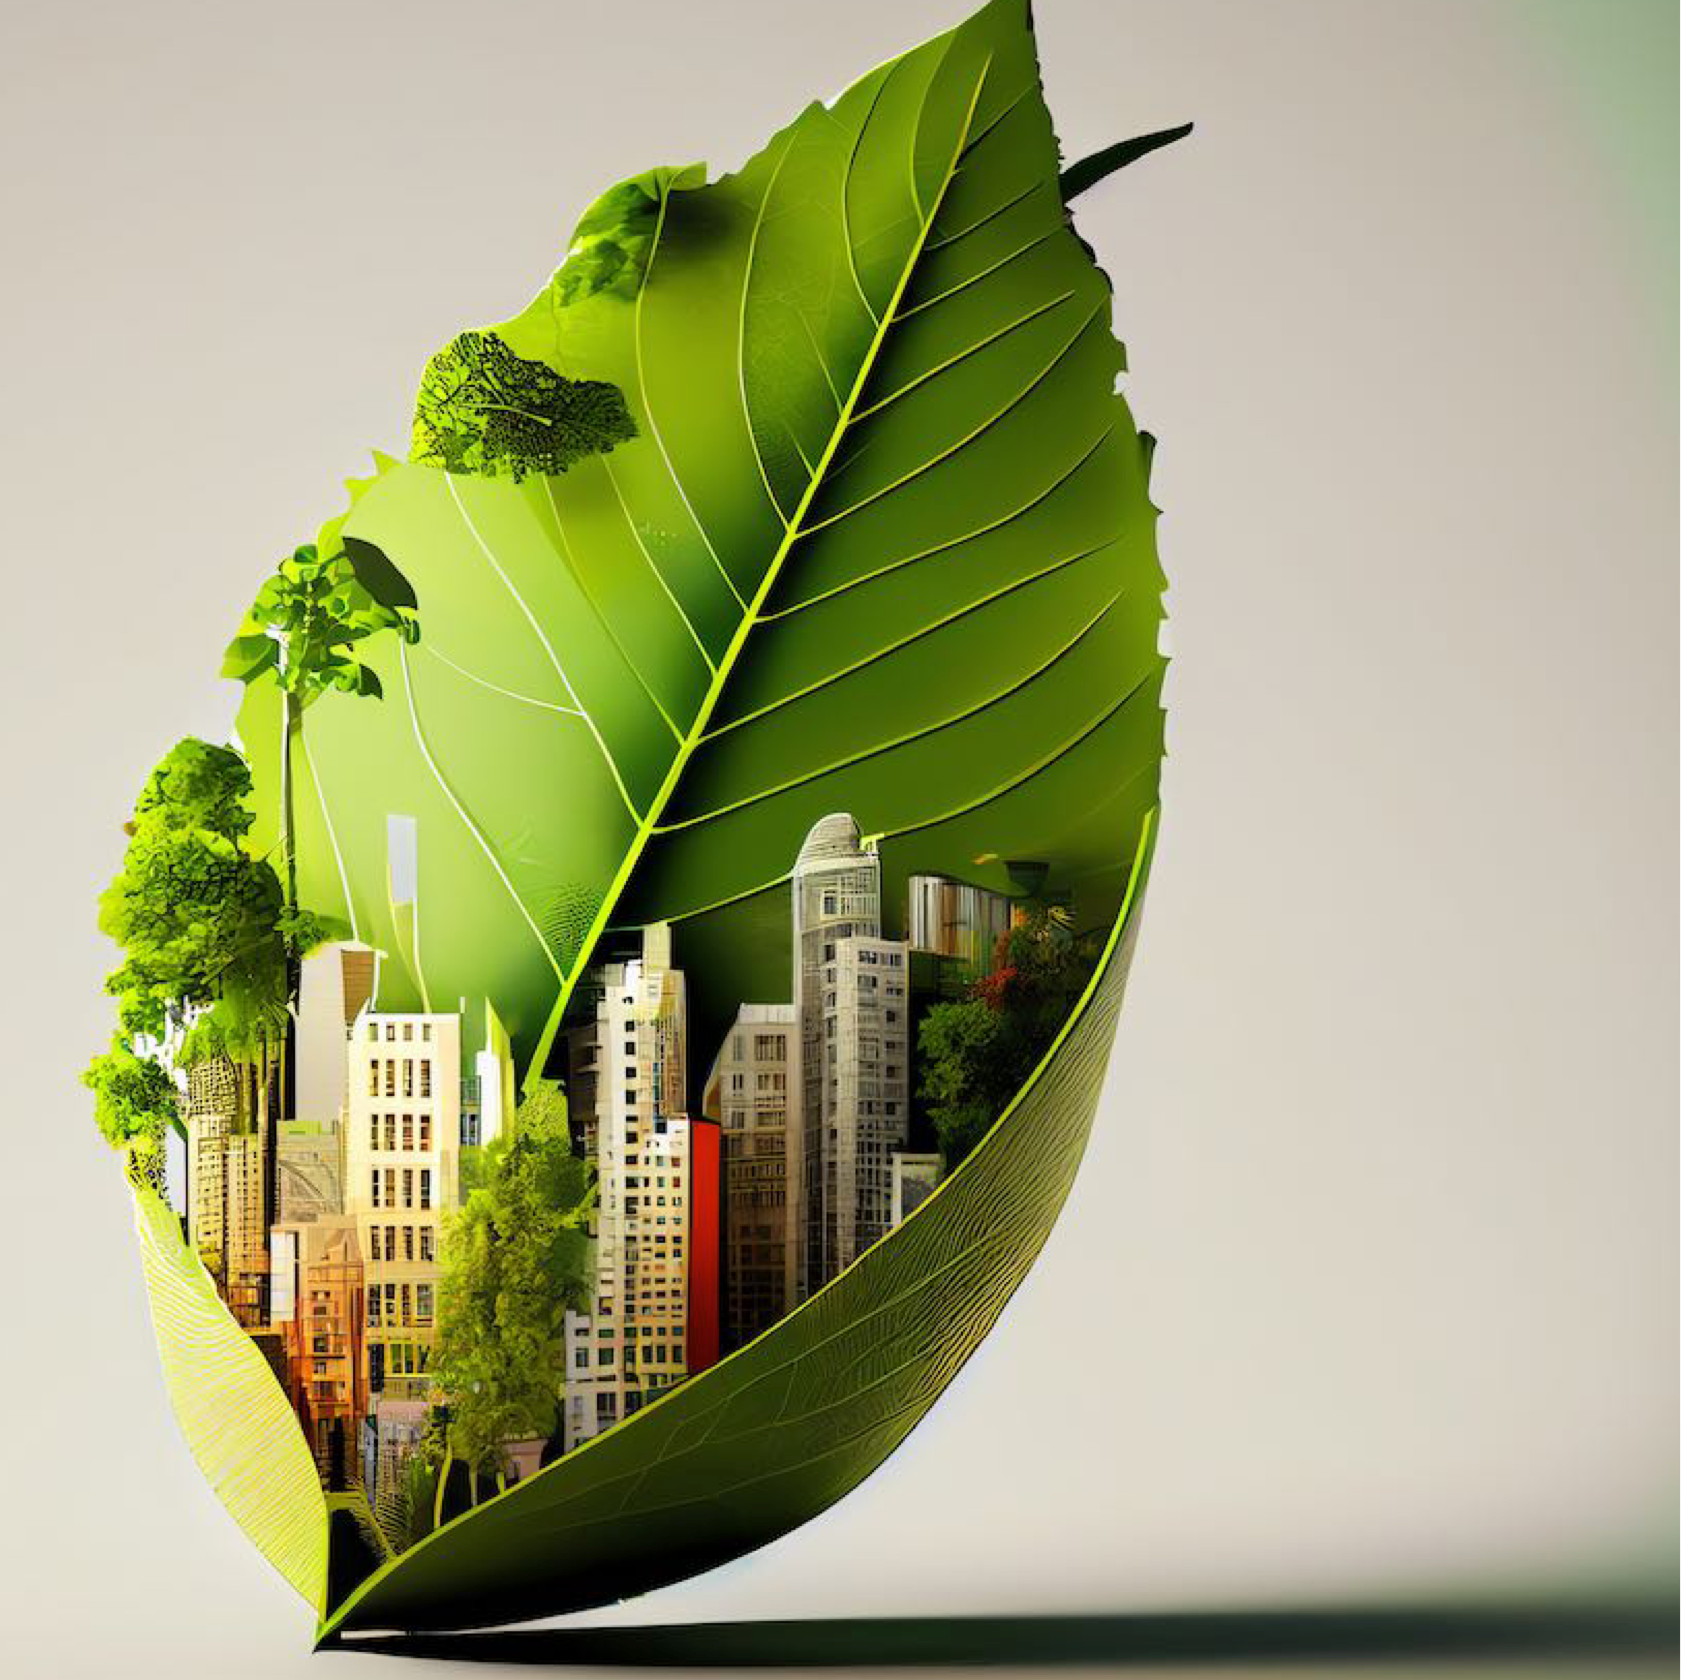 Arte digital, hoja con edificios representando sostentabilidad y energias limpias